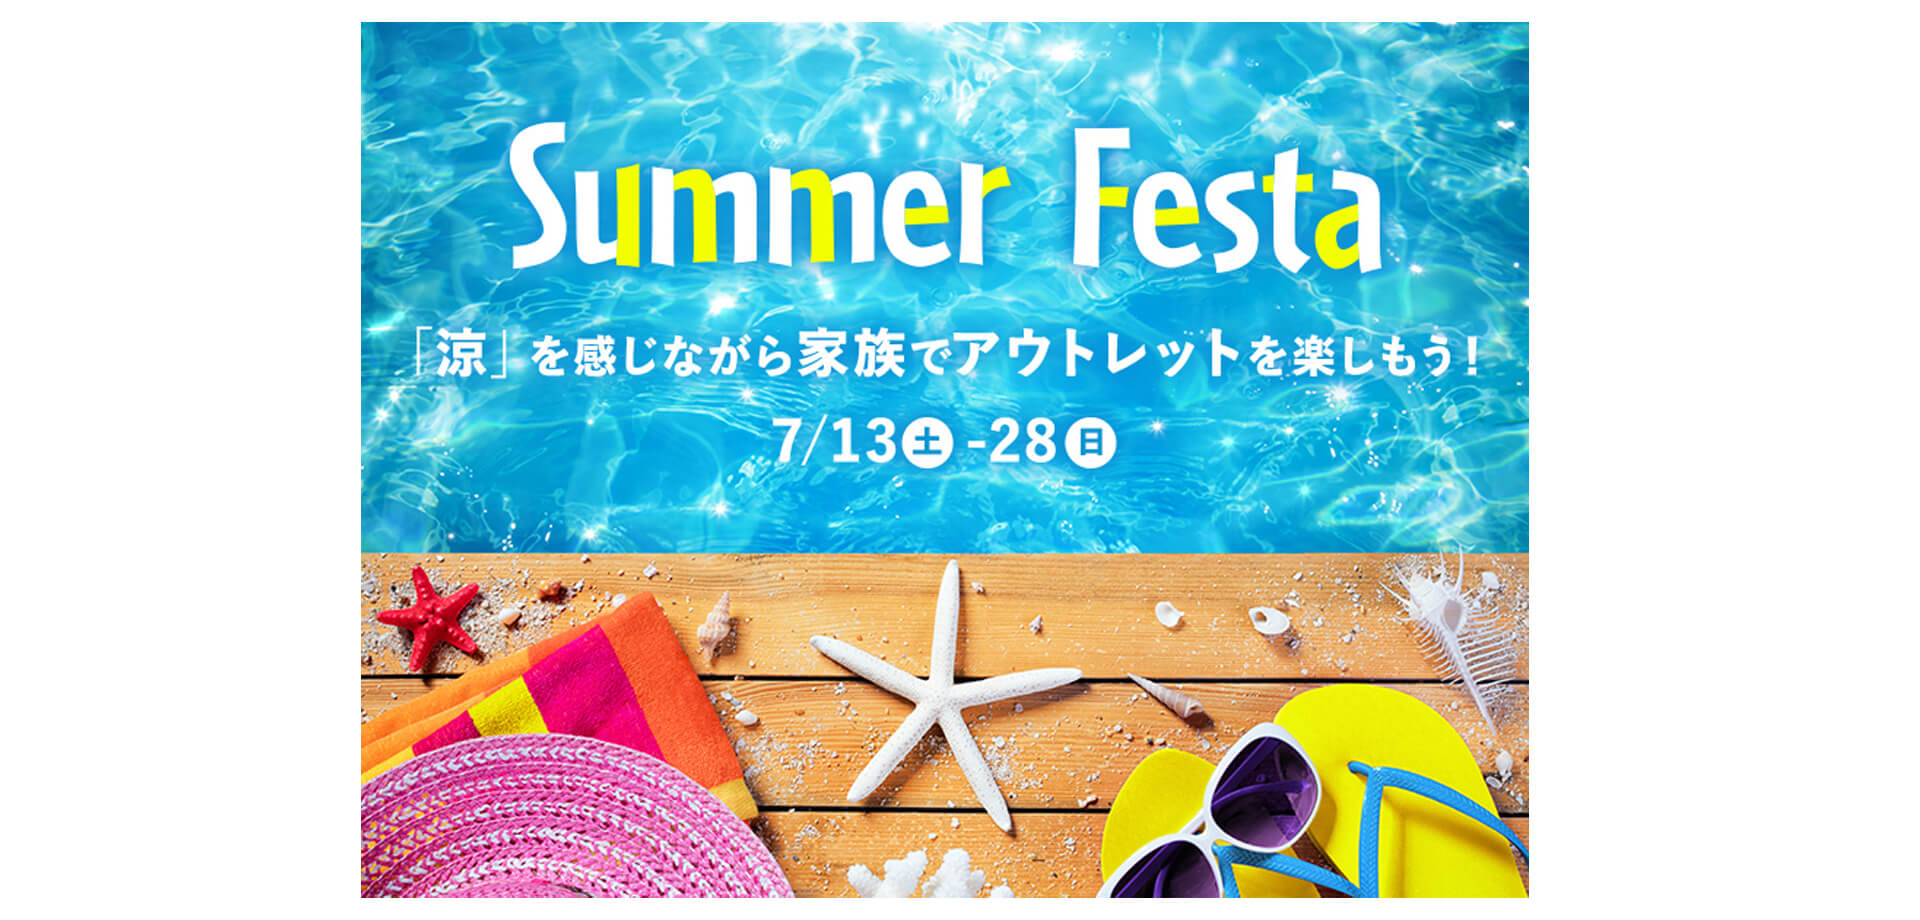 ふかや花園アウトレット「Summer Festa」バナー